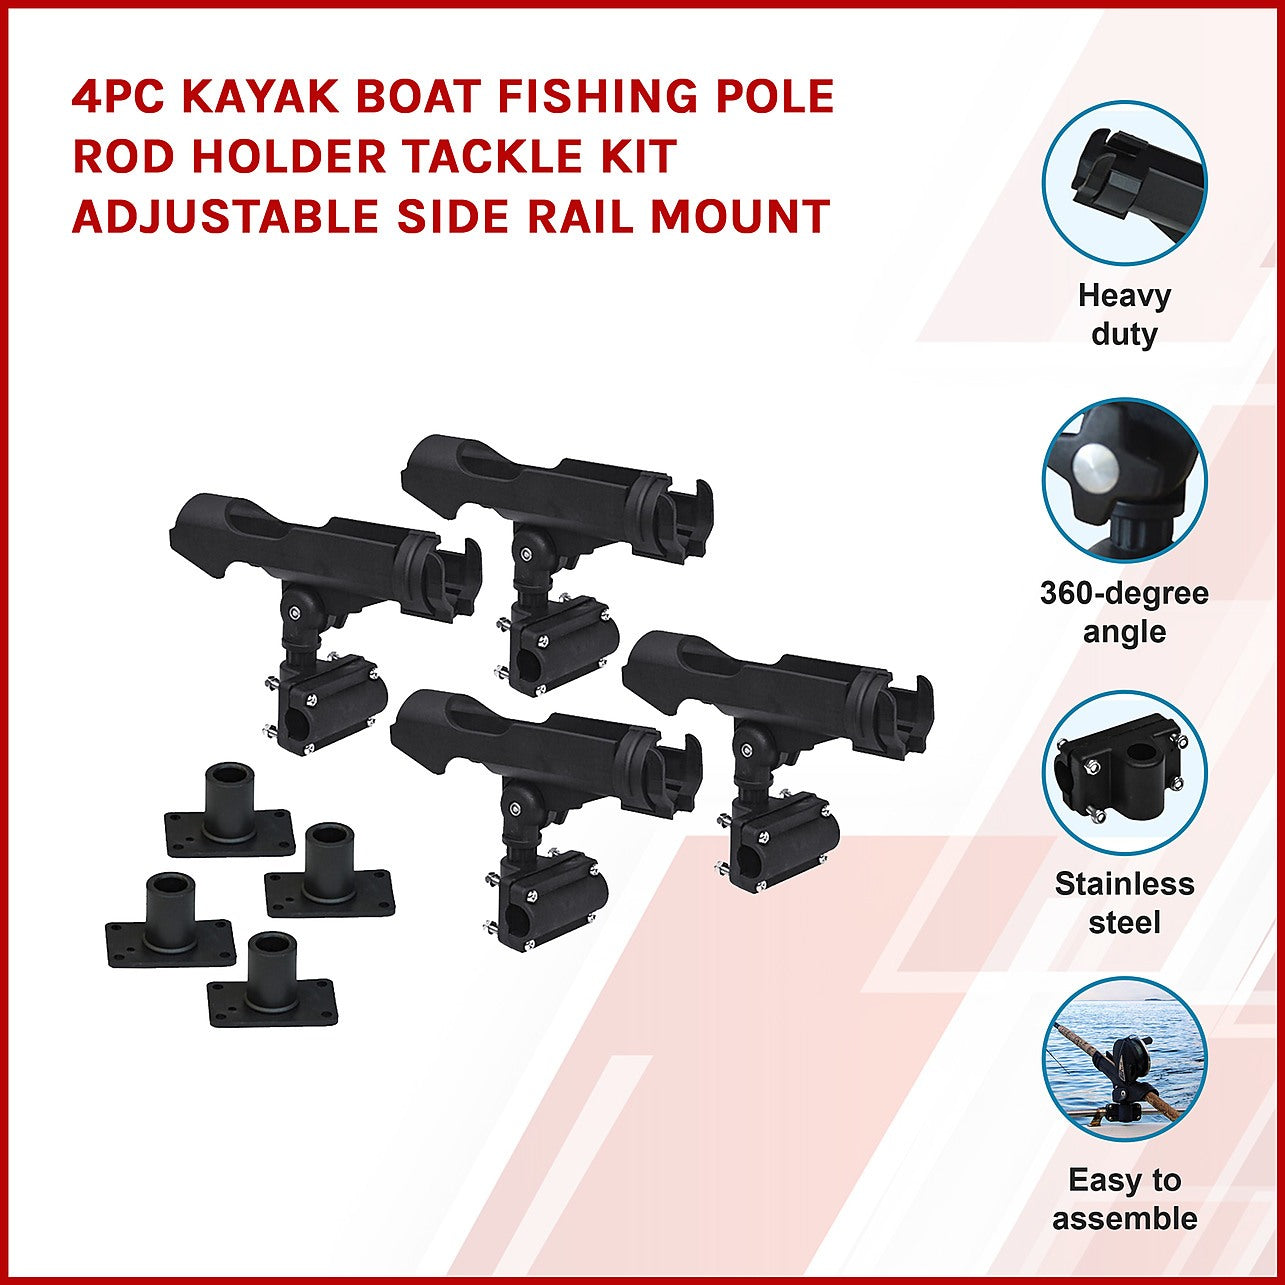 4PC Kayak Boat Fishing Pole Rod Holder Tackle Kit Adjustable Side